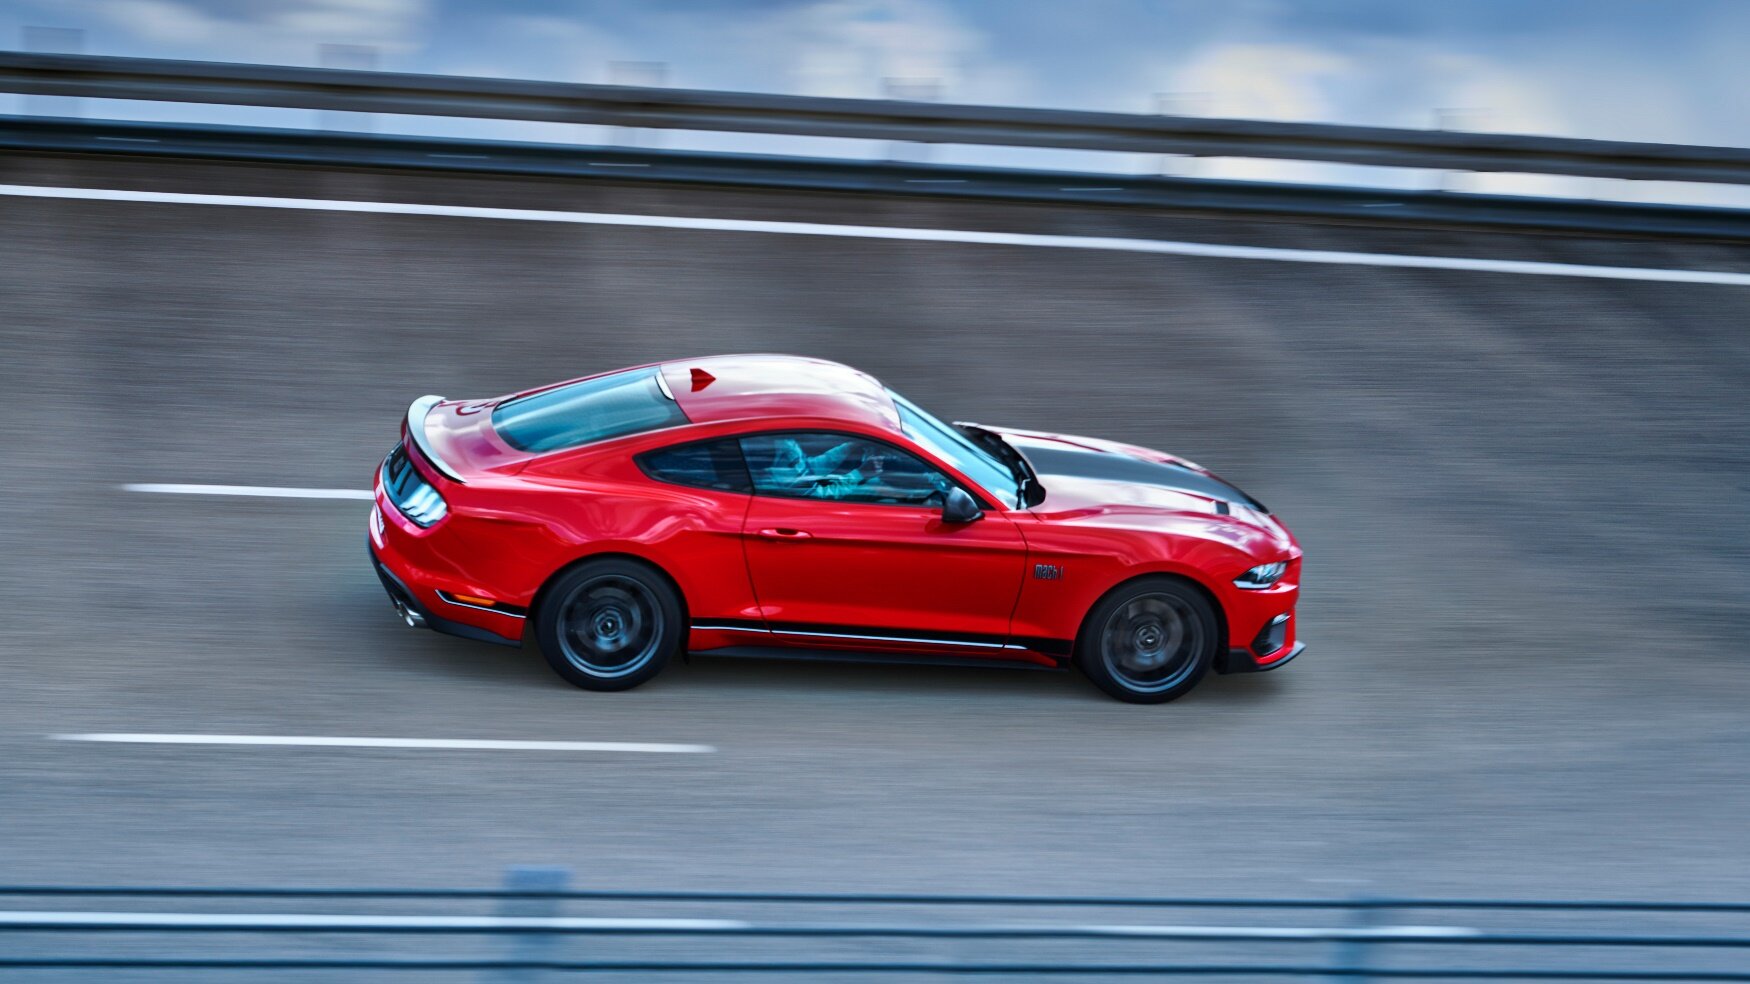 Nový Ford Mustang Mach 1 nabízí speciálně naladěný motor 5.0 V8 o výkonu 338 kW (460 k), vylepšenou aerodynamiku, posílené chlazení i úpravy podvozku a hnacího ústrojí